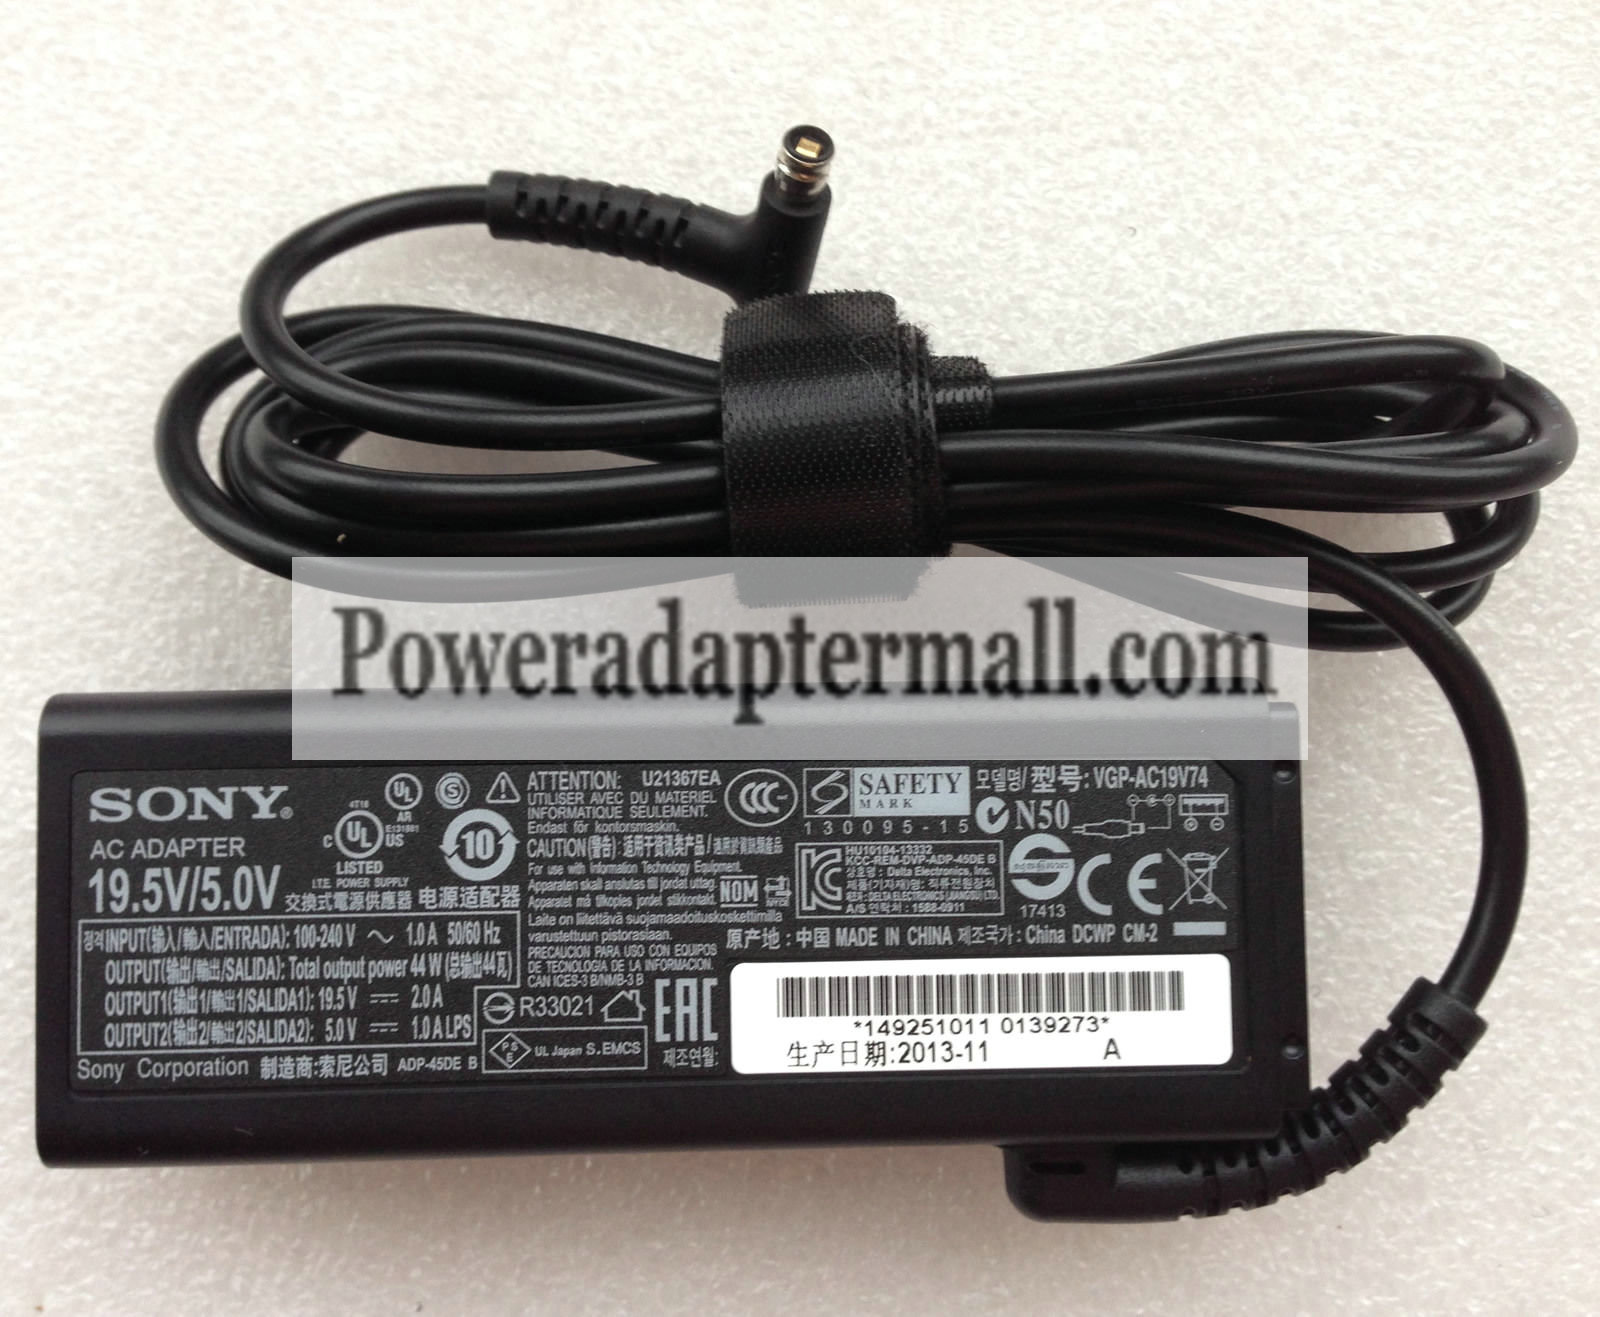 Original Sony VAIO Tap 11 SVT11225SH 19.5V/5.0A AC Adapter power